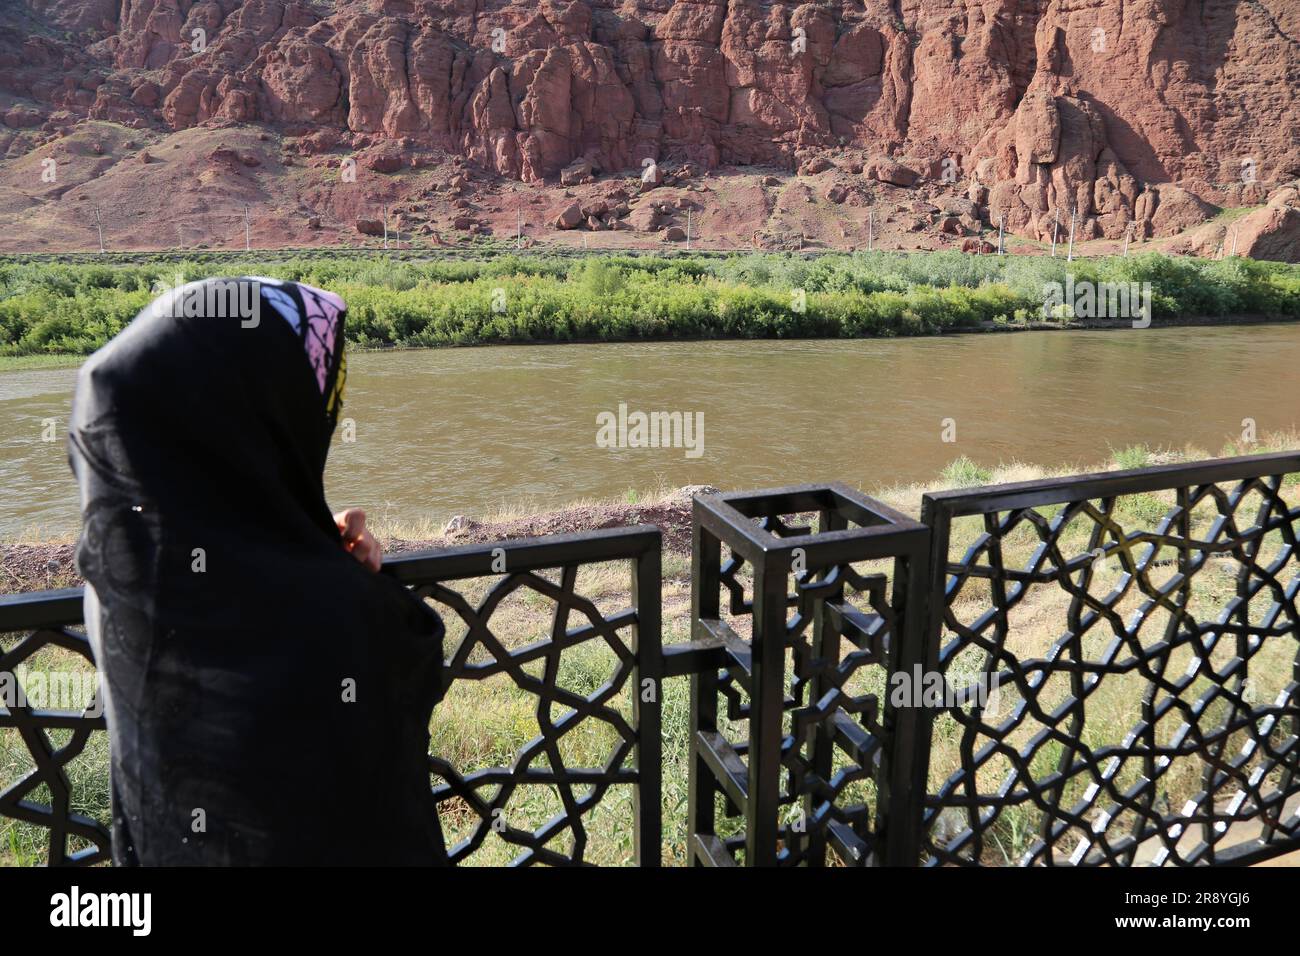 21 de junio de 2023, Jolfa, Azerbaiyán Oriental, Irán: Una mujer velada en un chador negro mira el río Aras en la frontera entre el noroeste de Irán y Azerbaiyán. El Aras (los Araks, Arax, Araxes, o Araz) es un río en el Cáucaso. Se levanta en el este de Turquía y fluye a lo largo de las fronteras entre Turquía y Armenia, entre Turquía y el exclave de Najicheván de Azerbaiyán, entre Irán y Azerbaiyán y Armenia, y, finalmente, a través de Azerbaiyán, donde desemboca en el río Kura. Drena el lado sur de las montañas del Cáucaso Menor, mientras que el Kura drena el lado norte de las caucas menores Foto de stock